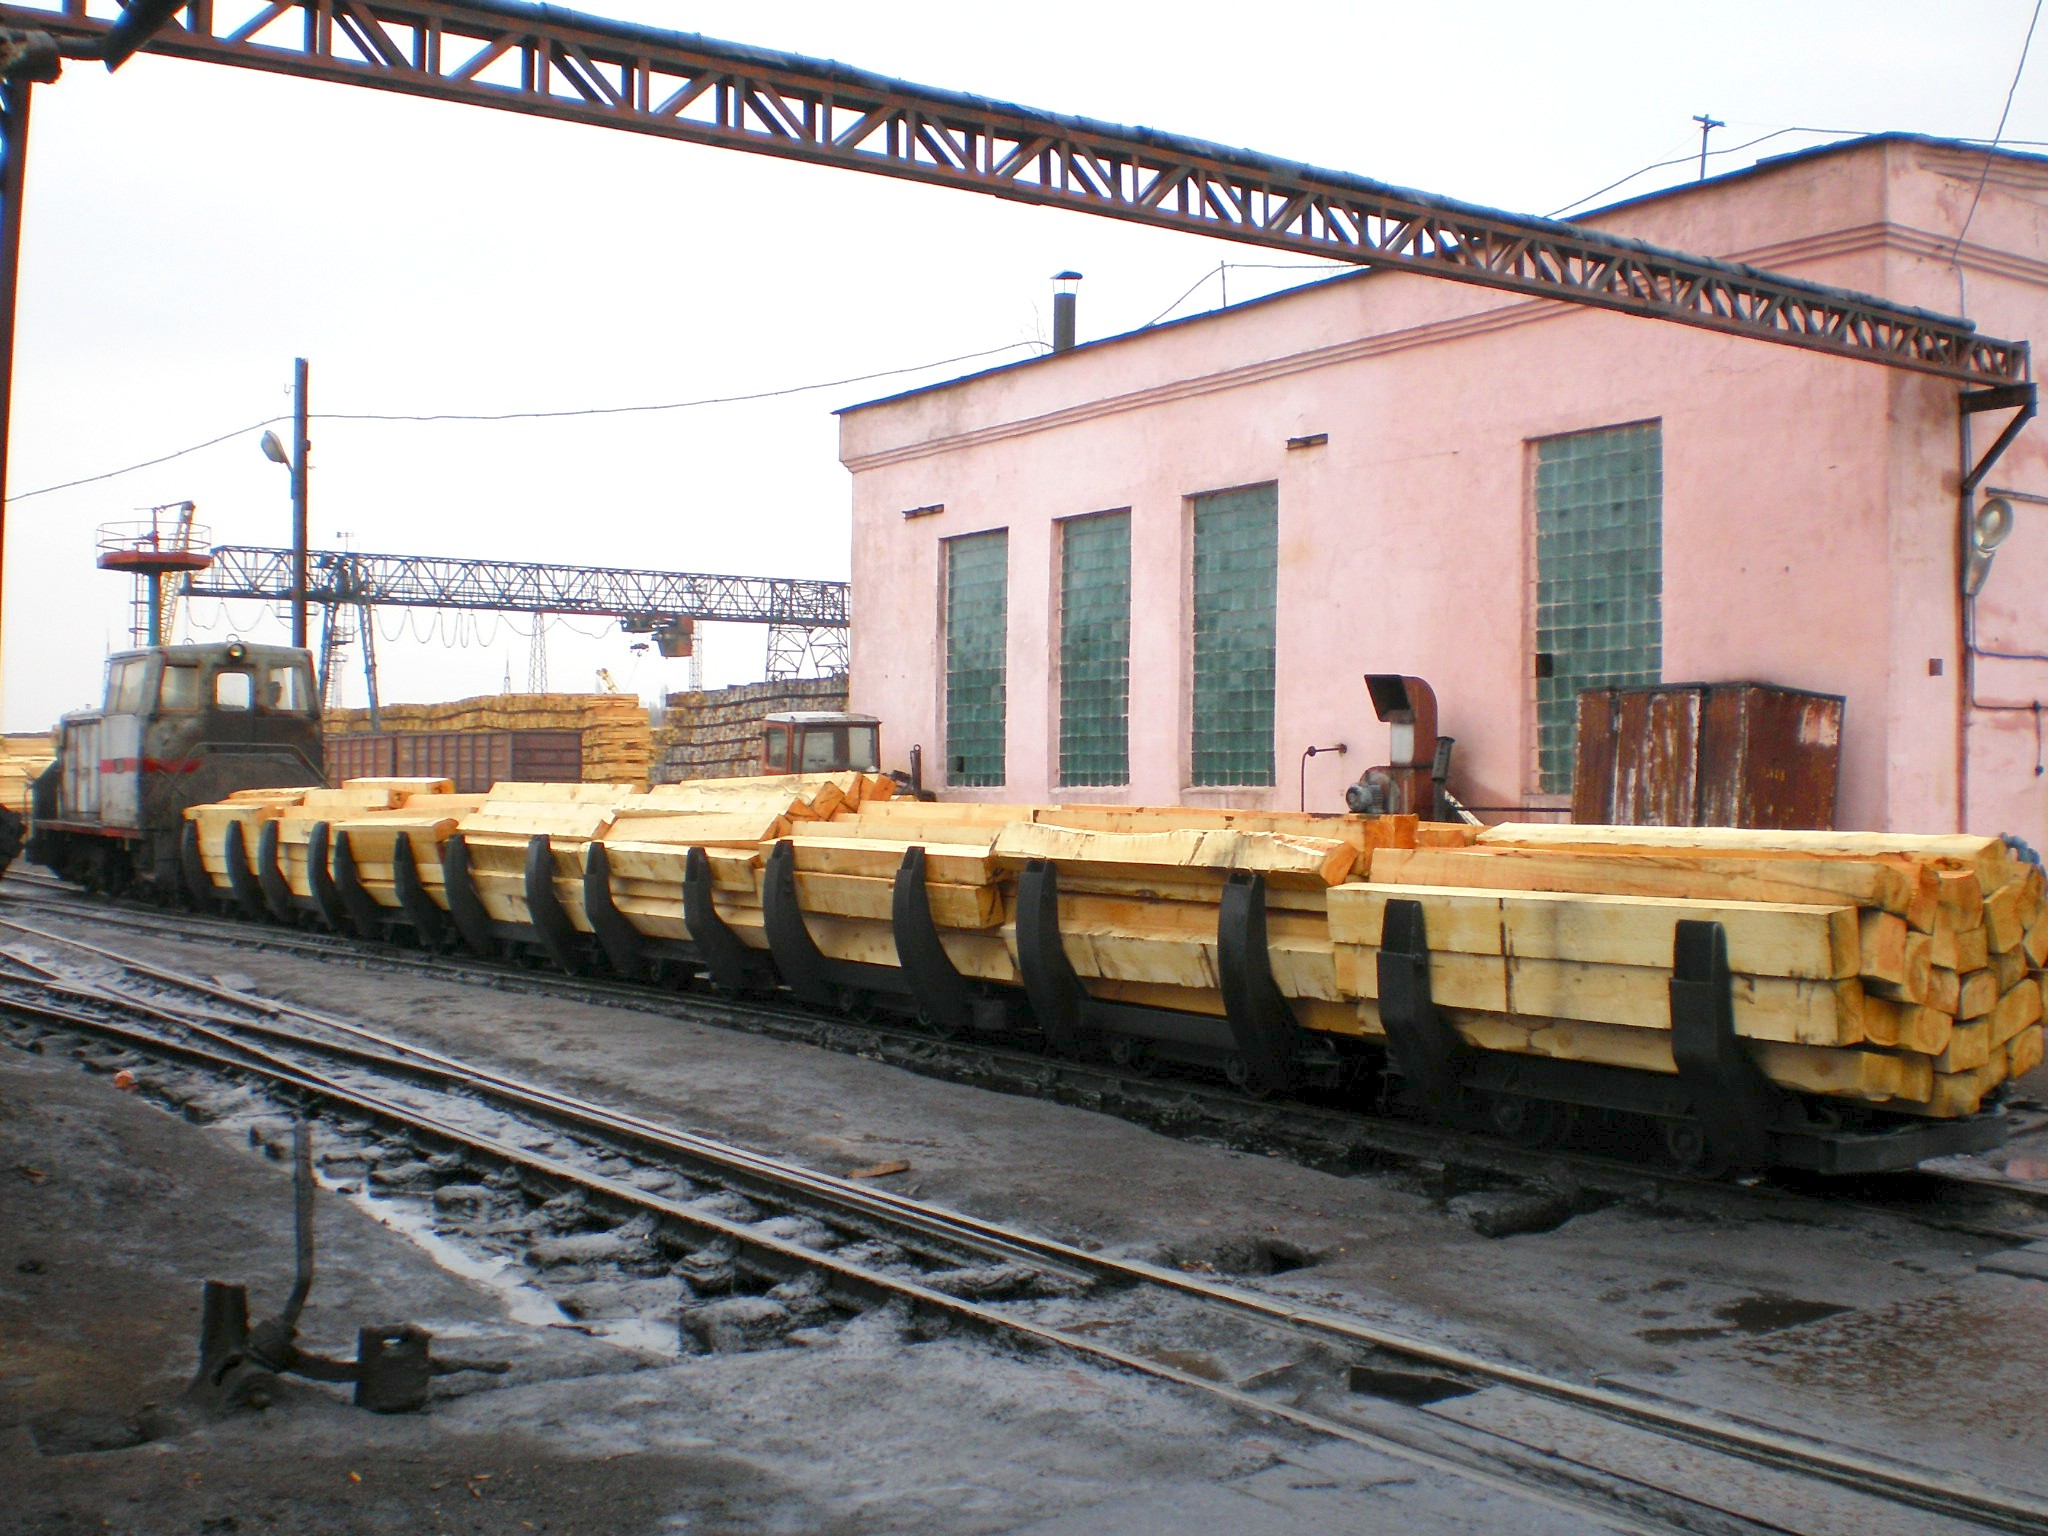 Узкоколейная железная дорога Бологовского шпалопропиточного завода  —  фотографии, сделанные в 2008 году (часть 1)